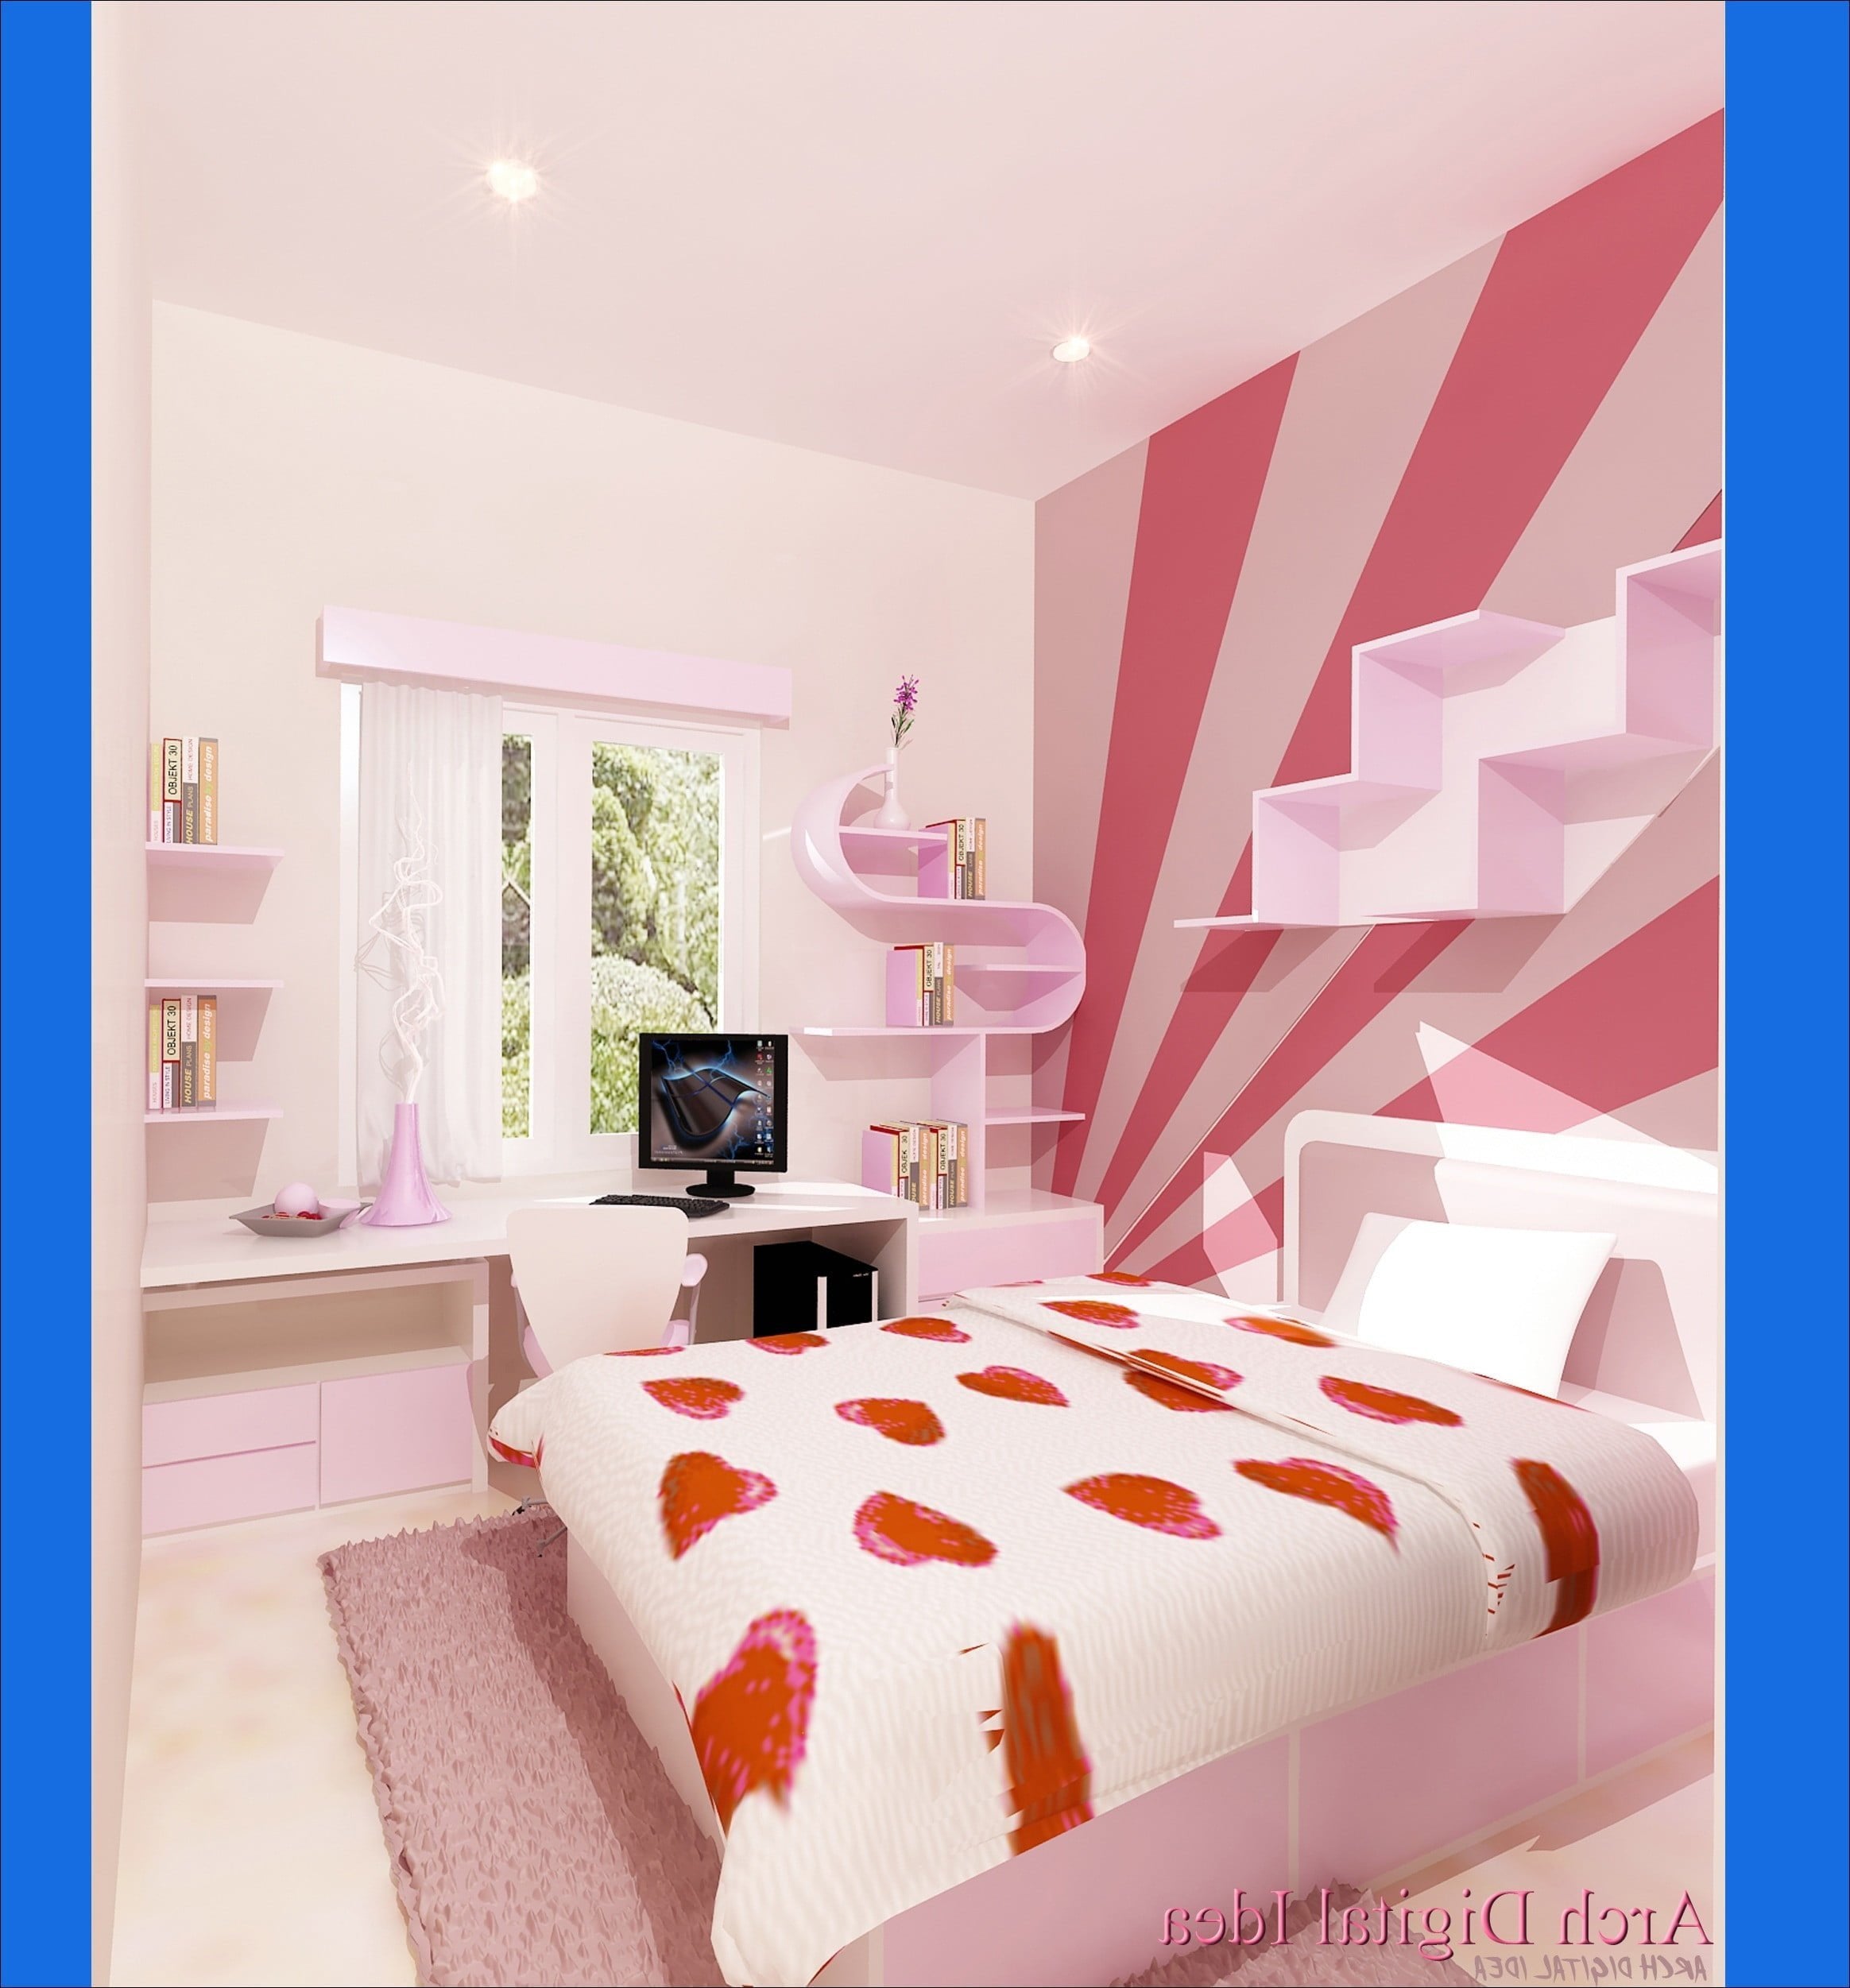 68 Ide Cantik Desain Kamar Tidur Warna Pink Istimewa Banget